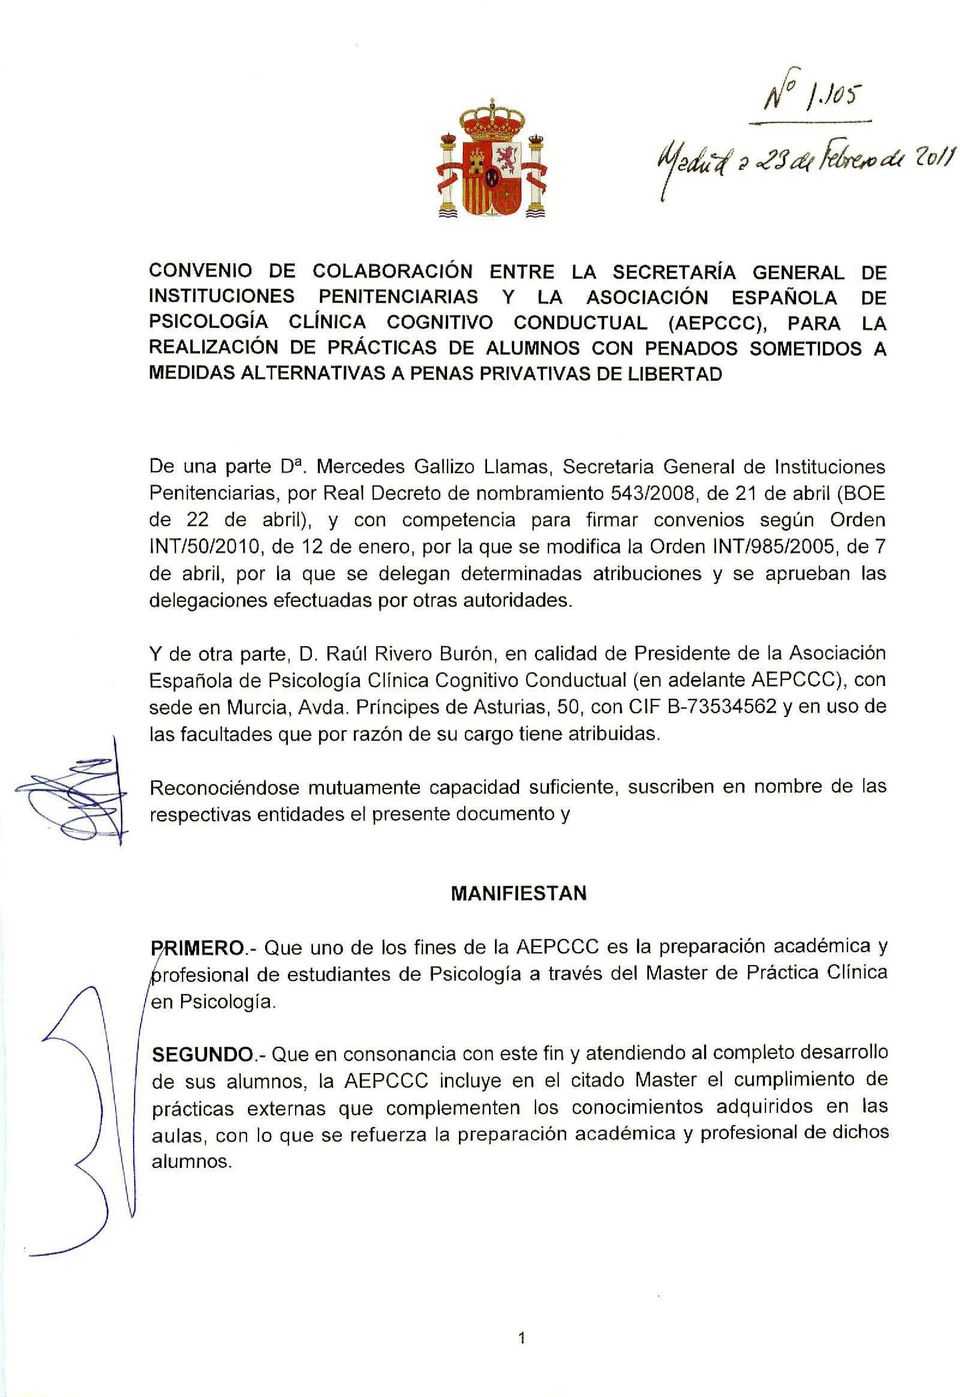 Mercedes Gallizo Llamas, Secretaria General de Instituciones Penitenciarias, por Real Decreto de nombramiento 543/2008, de 21 de abril (BOE de 22 de abril), y con competencia para firmar convenios